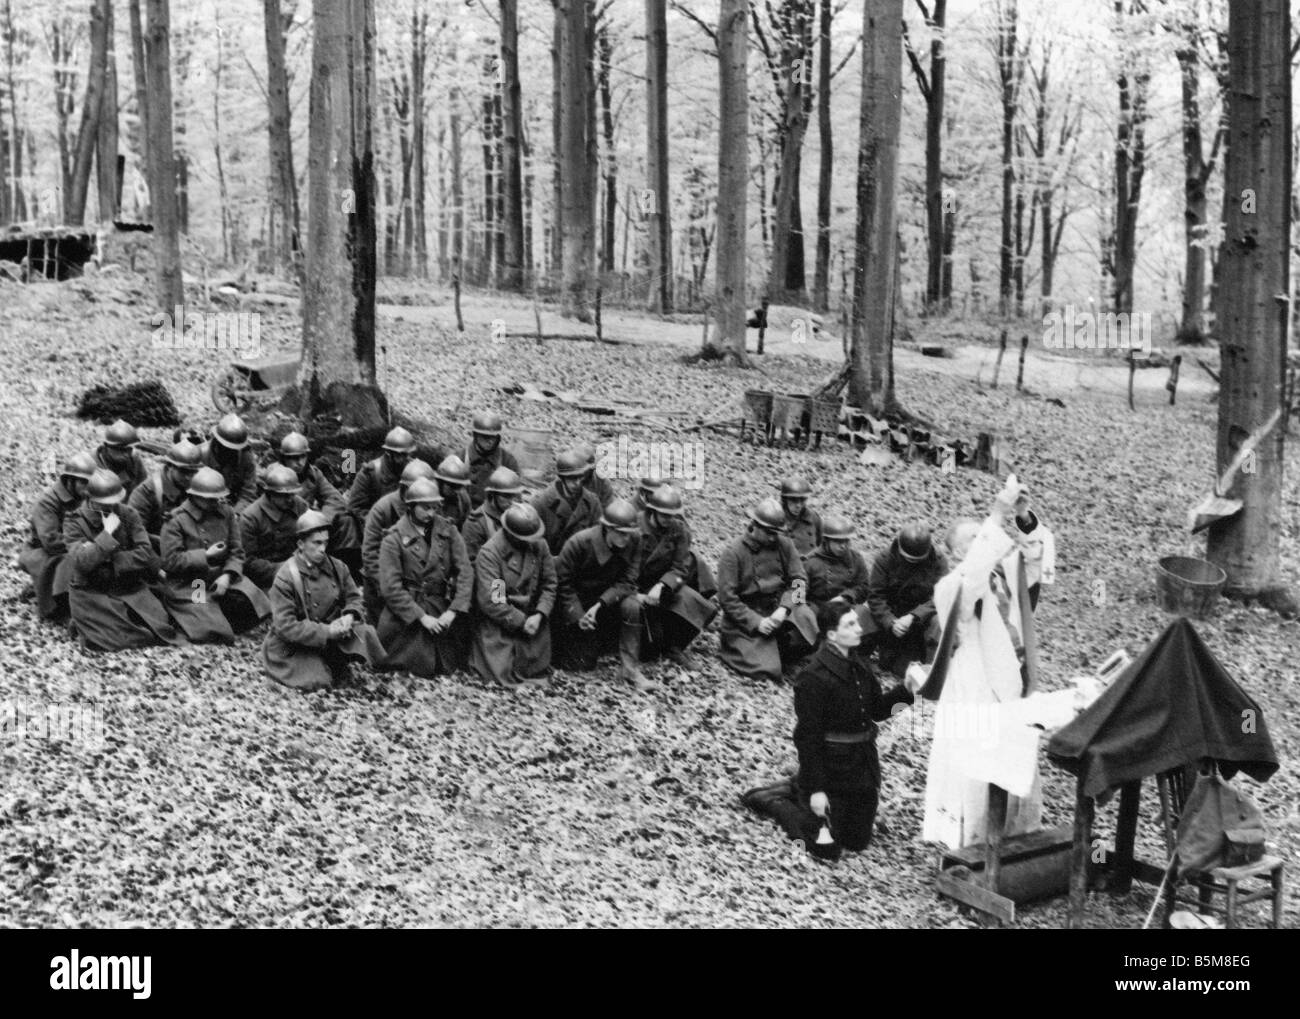 Service für französische Truppen Weltkrieg Weltkrieg Frankreich Verlaufsfeld Service für französische Truppen in einem Holz Foto undatiert Stockfoto